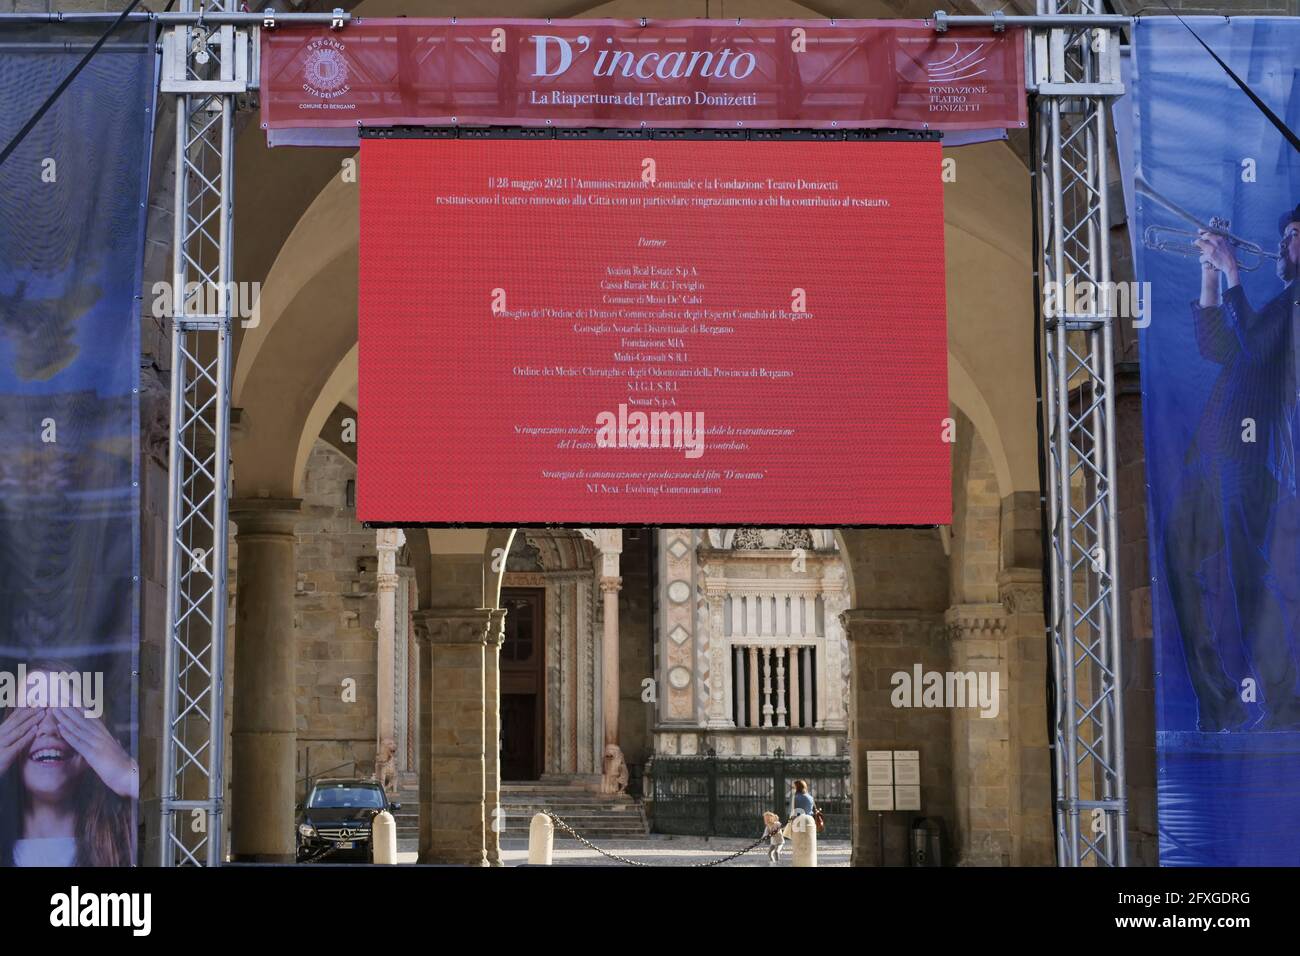 Festival Donizetti banners in Piazza Vecchia square, Bergamo alta, Lombardy. Stock Photo